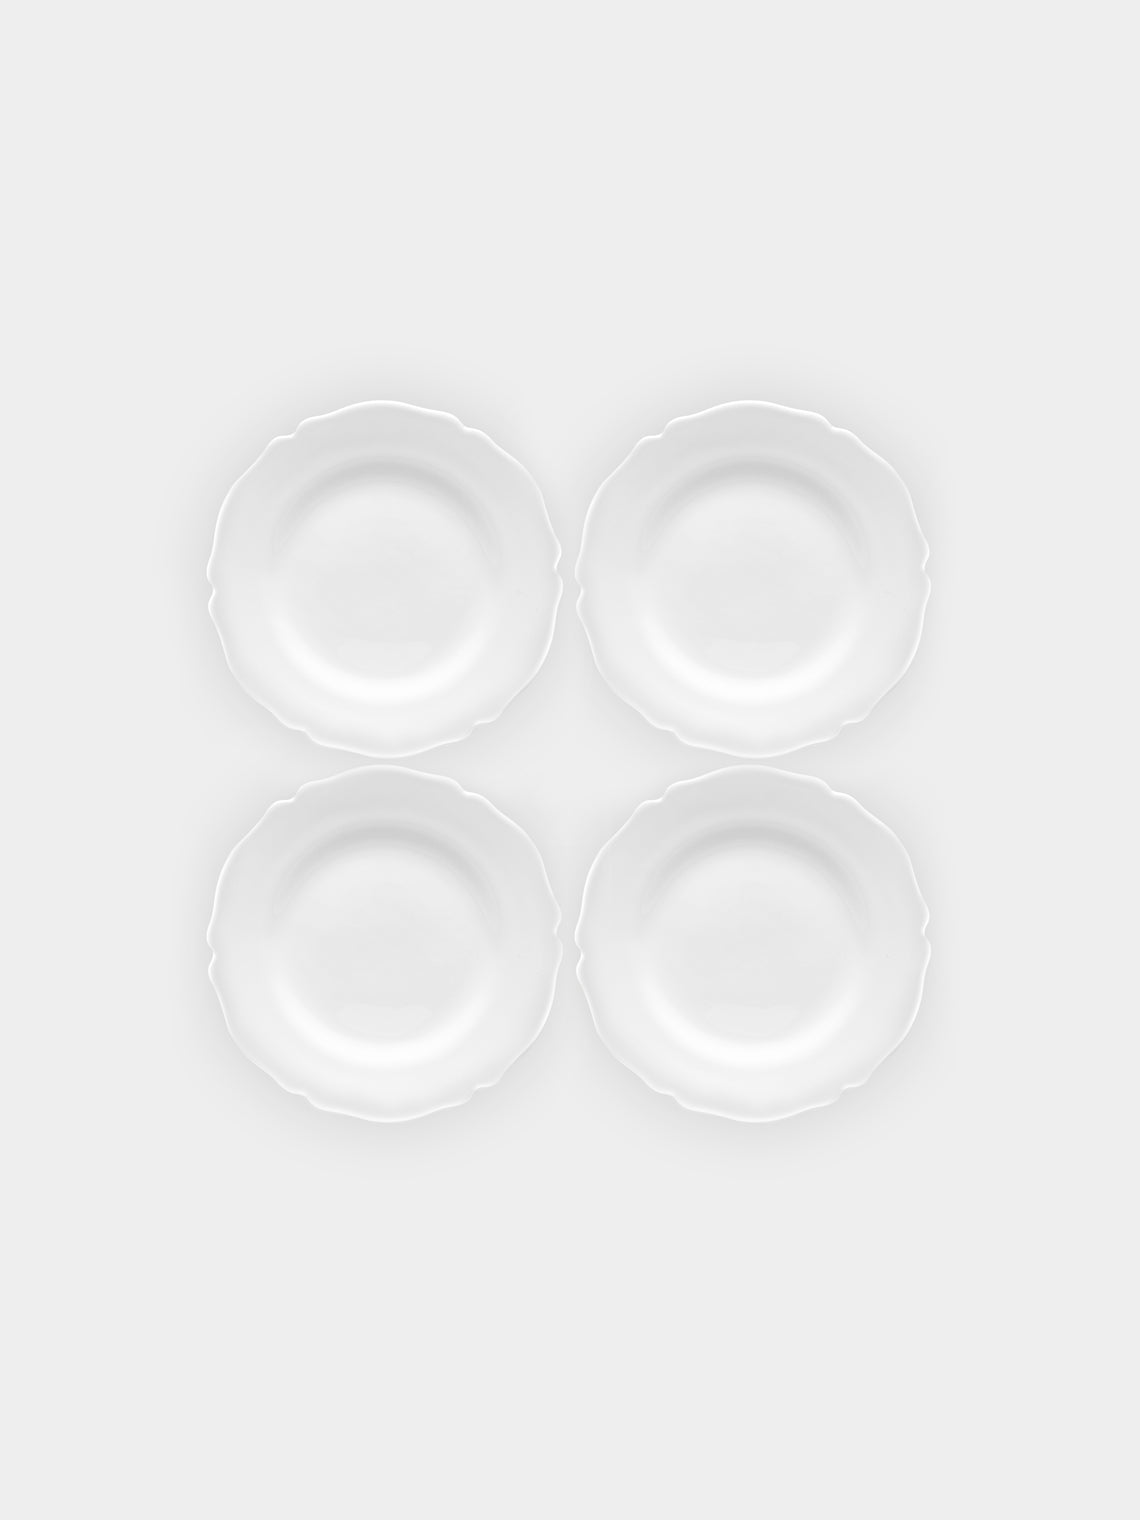 Bourg Joly Malicorne - Festons Ceramic Side Plates (Set of 4) -  - ABASK